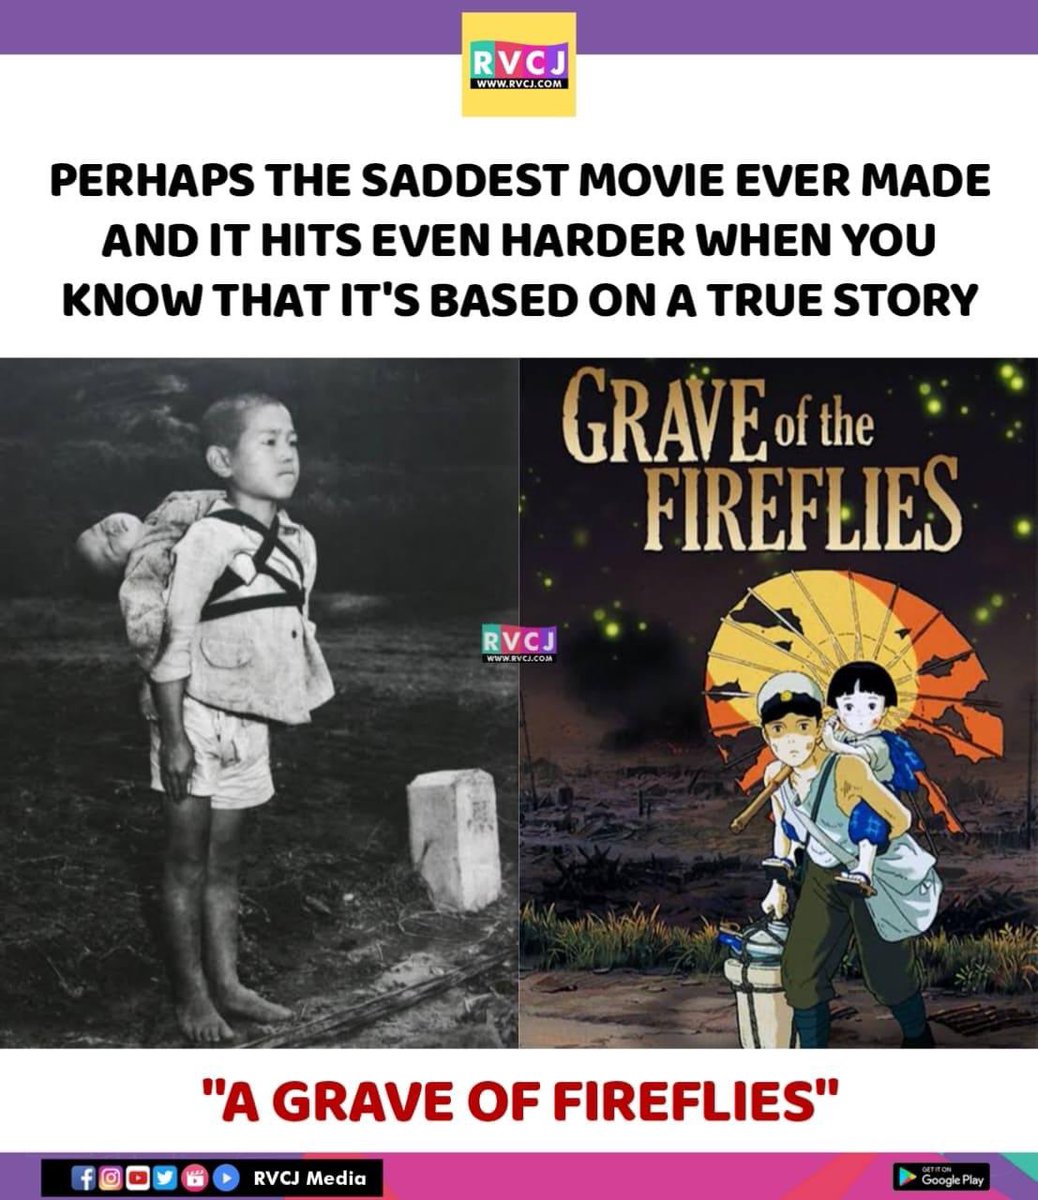 Saddest movie!
#graveofthefireflies #japanesemovie #japanesefilm #rvcjmovies